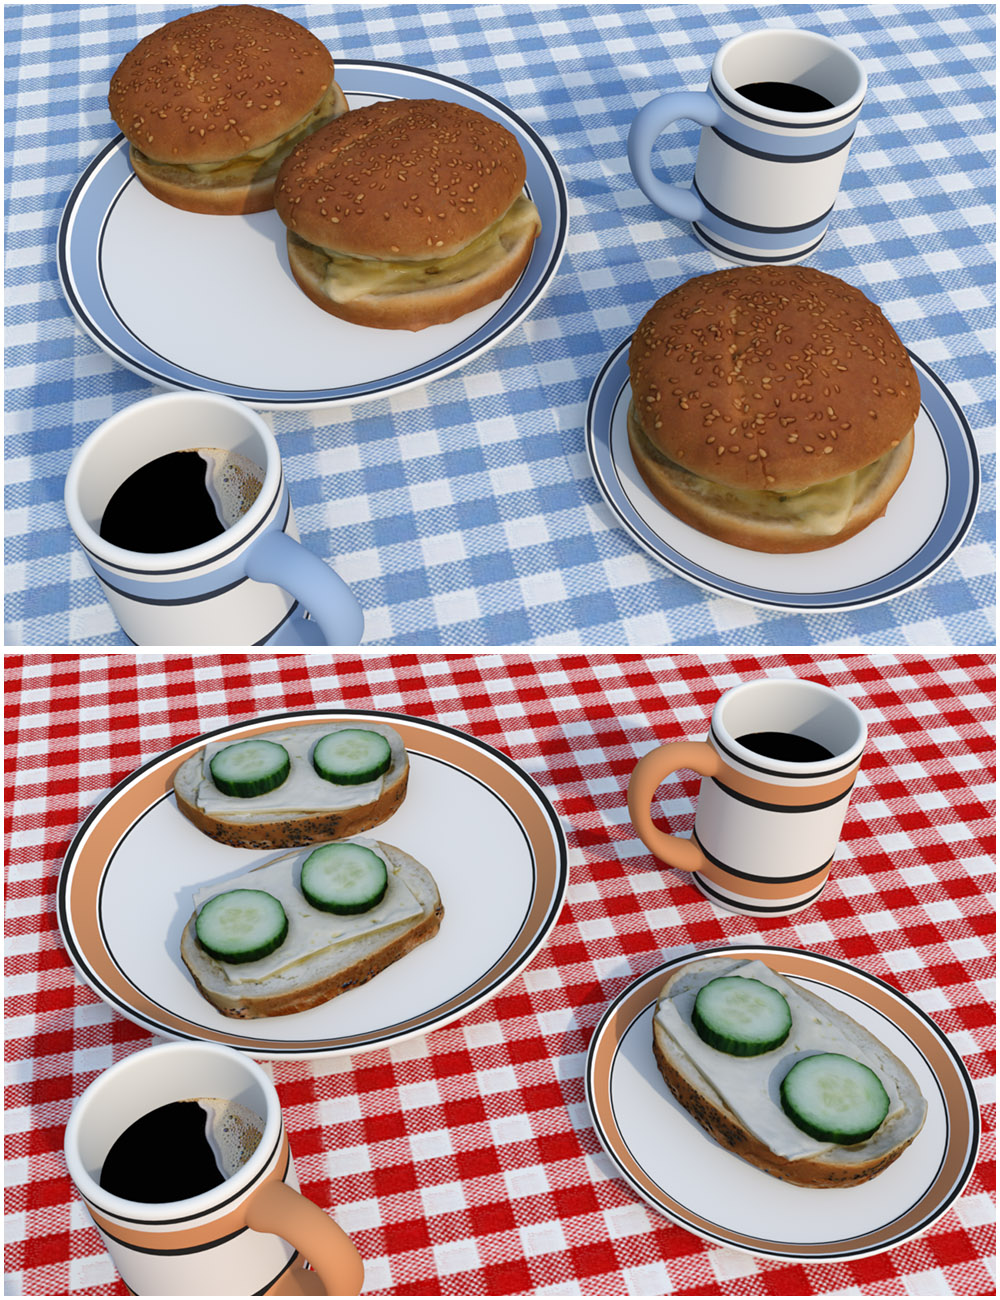 Tasty Sandwich Props by: Oskarsson, 3D Models by Daz 3D